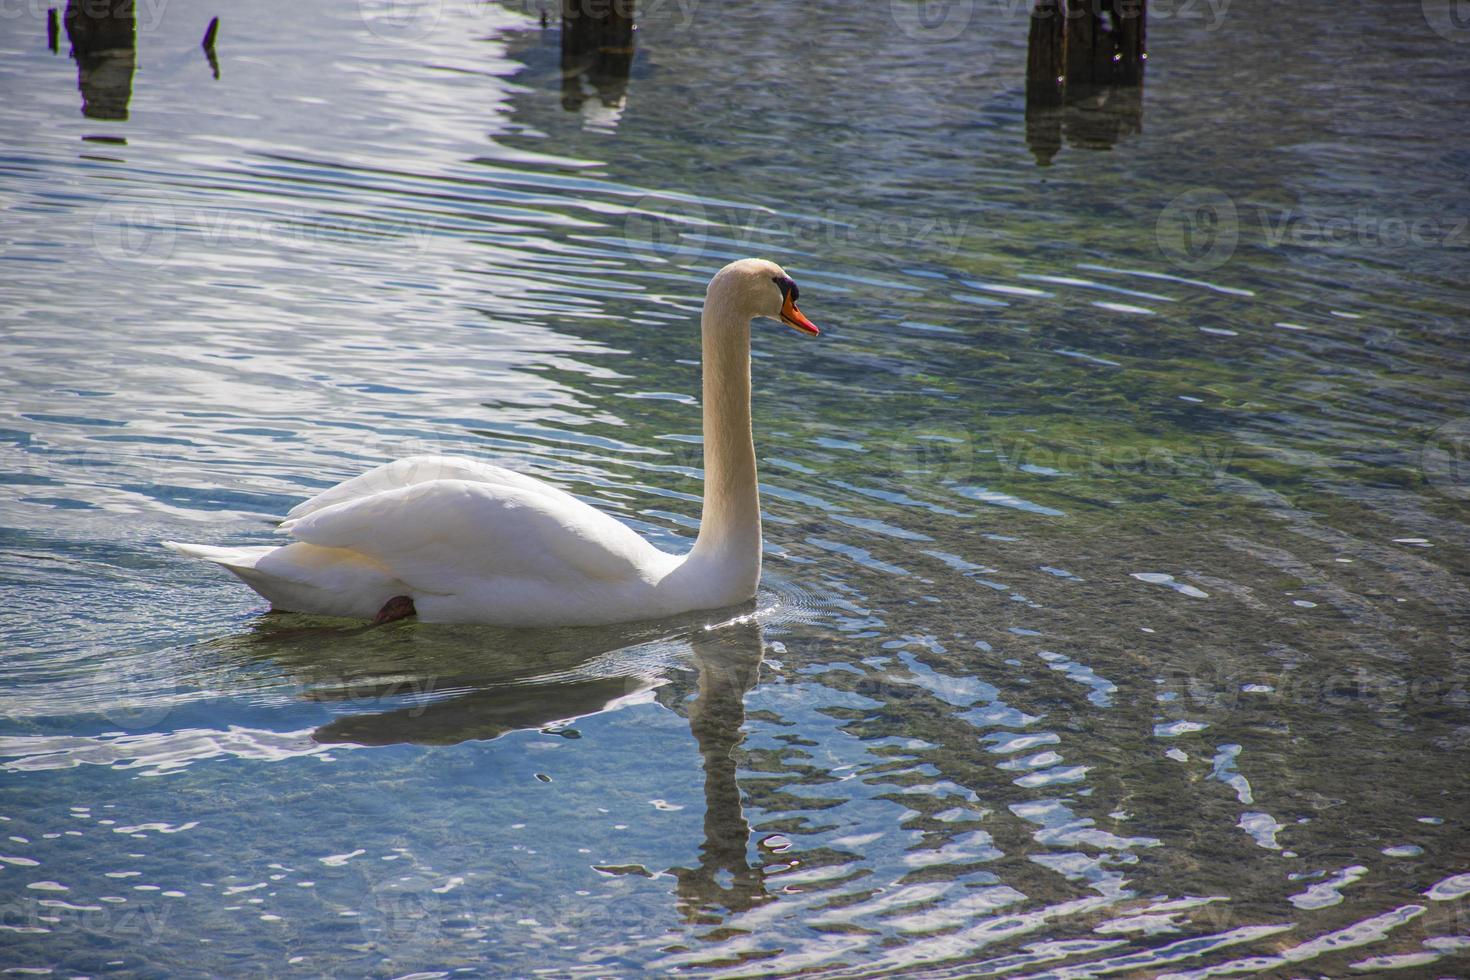 lago alpino con cisne blanco foto